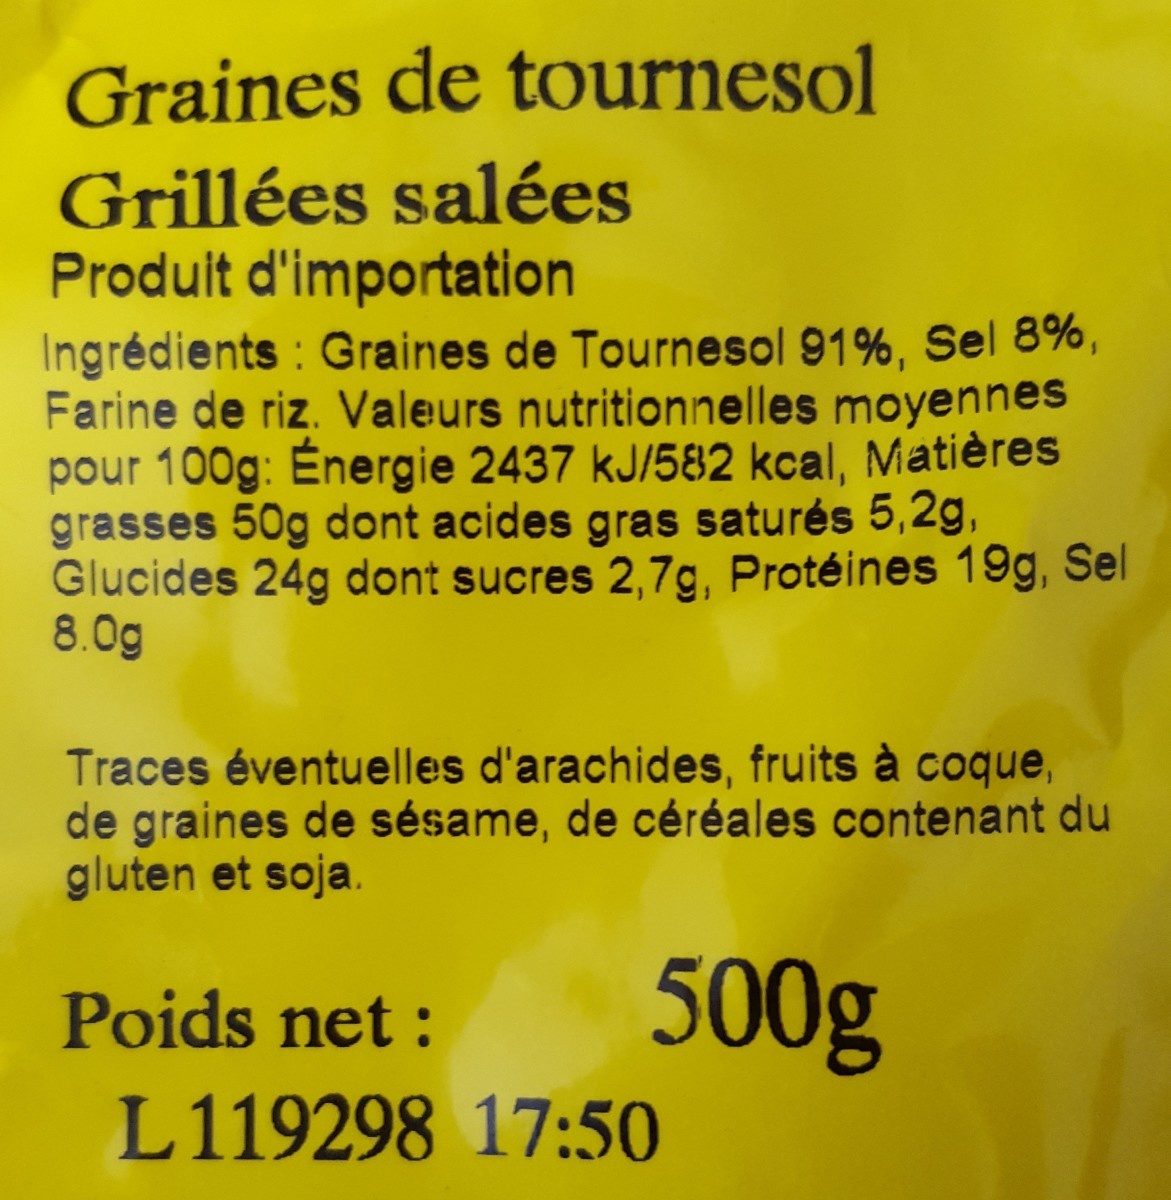 Graines de tournesol grillés salées - Ingredients - fr